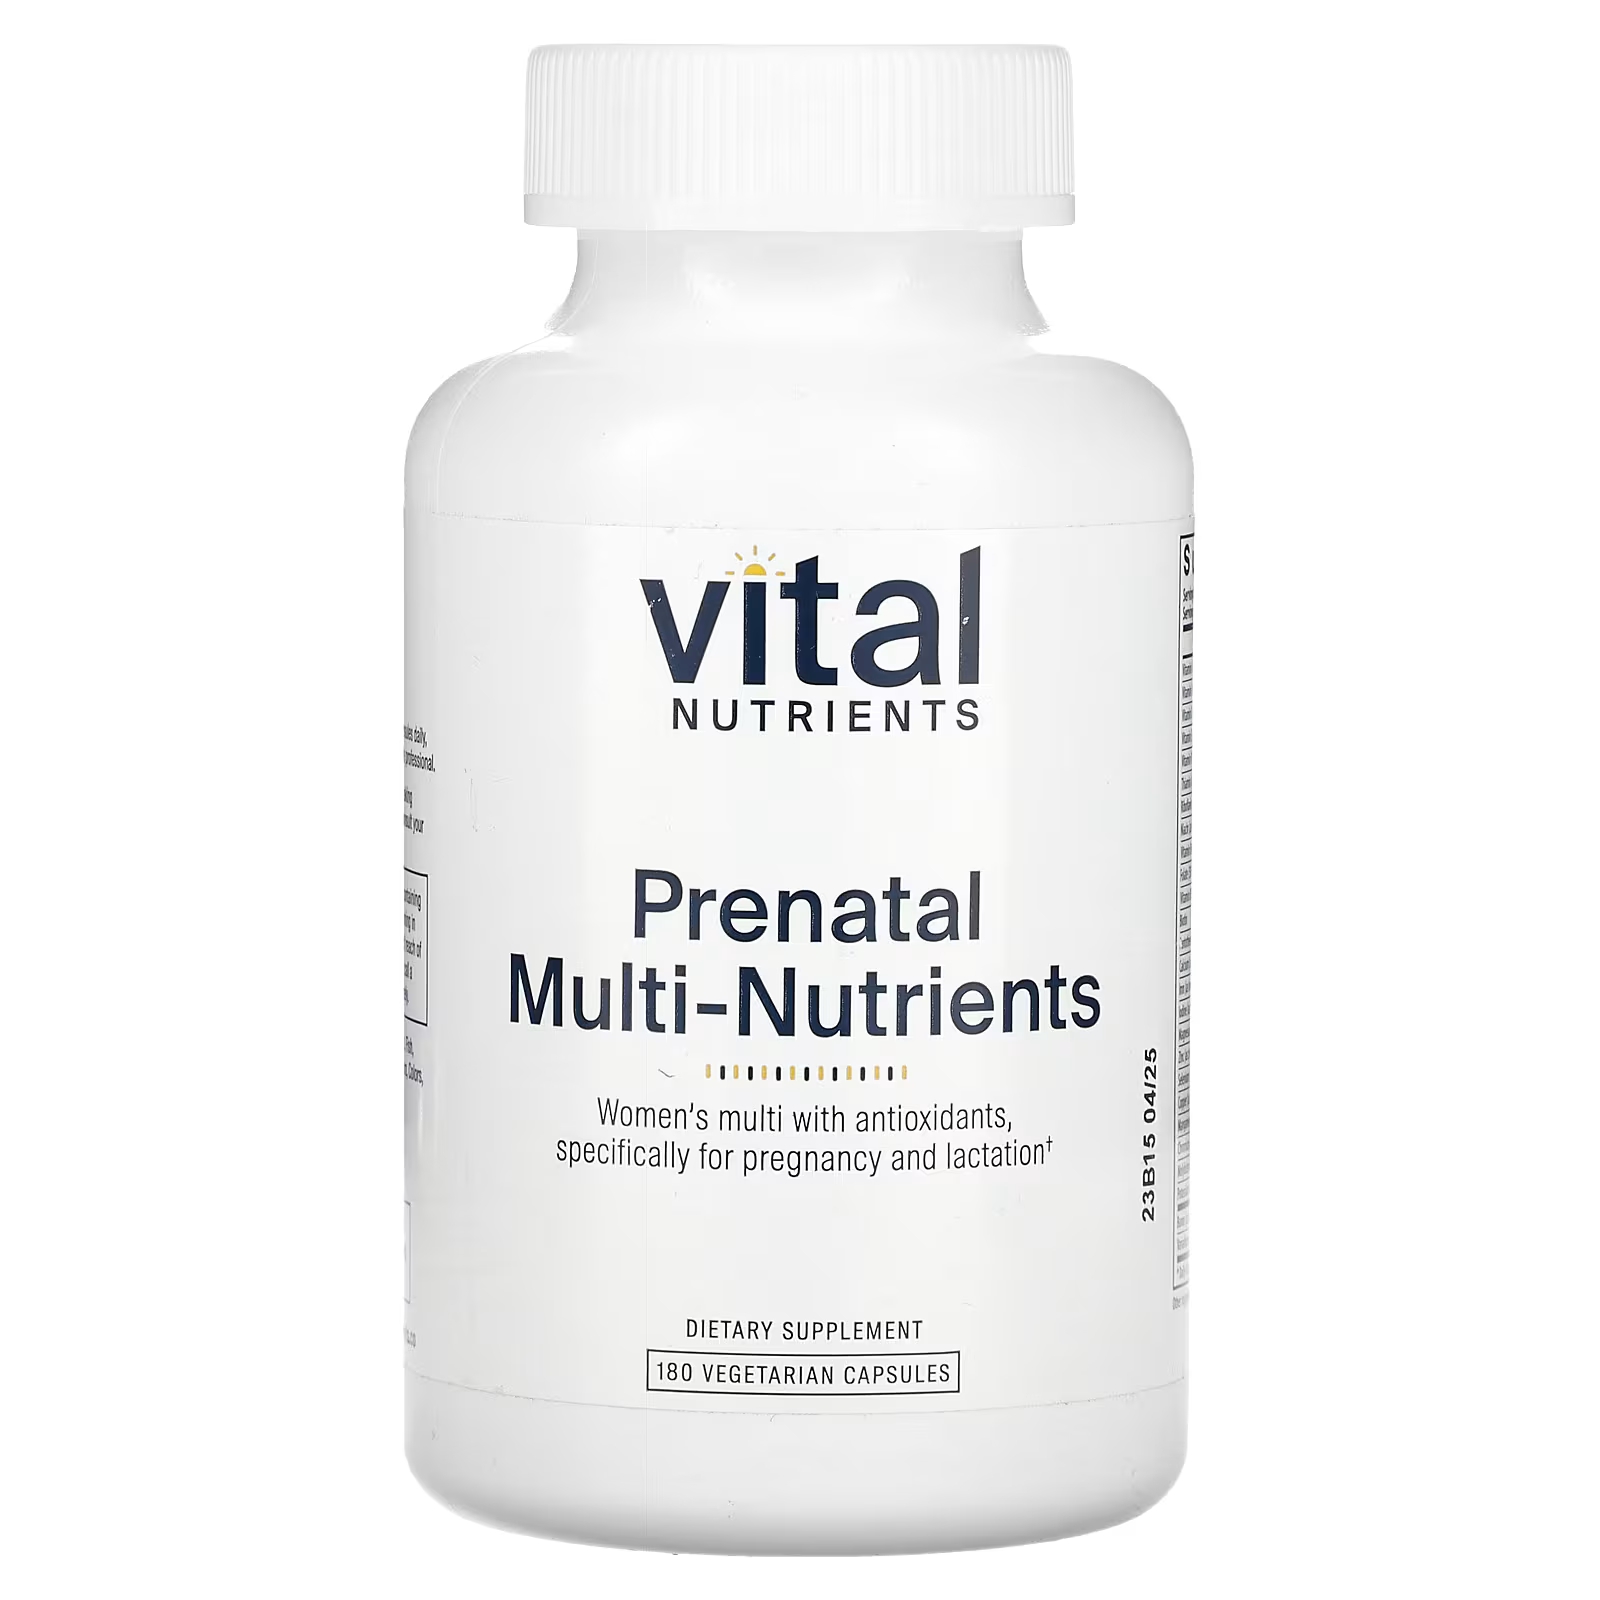 Пищевая добавка Vital Nutrients Prenatal Multi-Nutrients, 180 капсул витамины антиоксиданты минералы awochactive вуменс формула